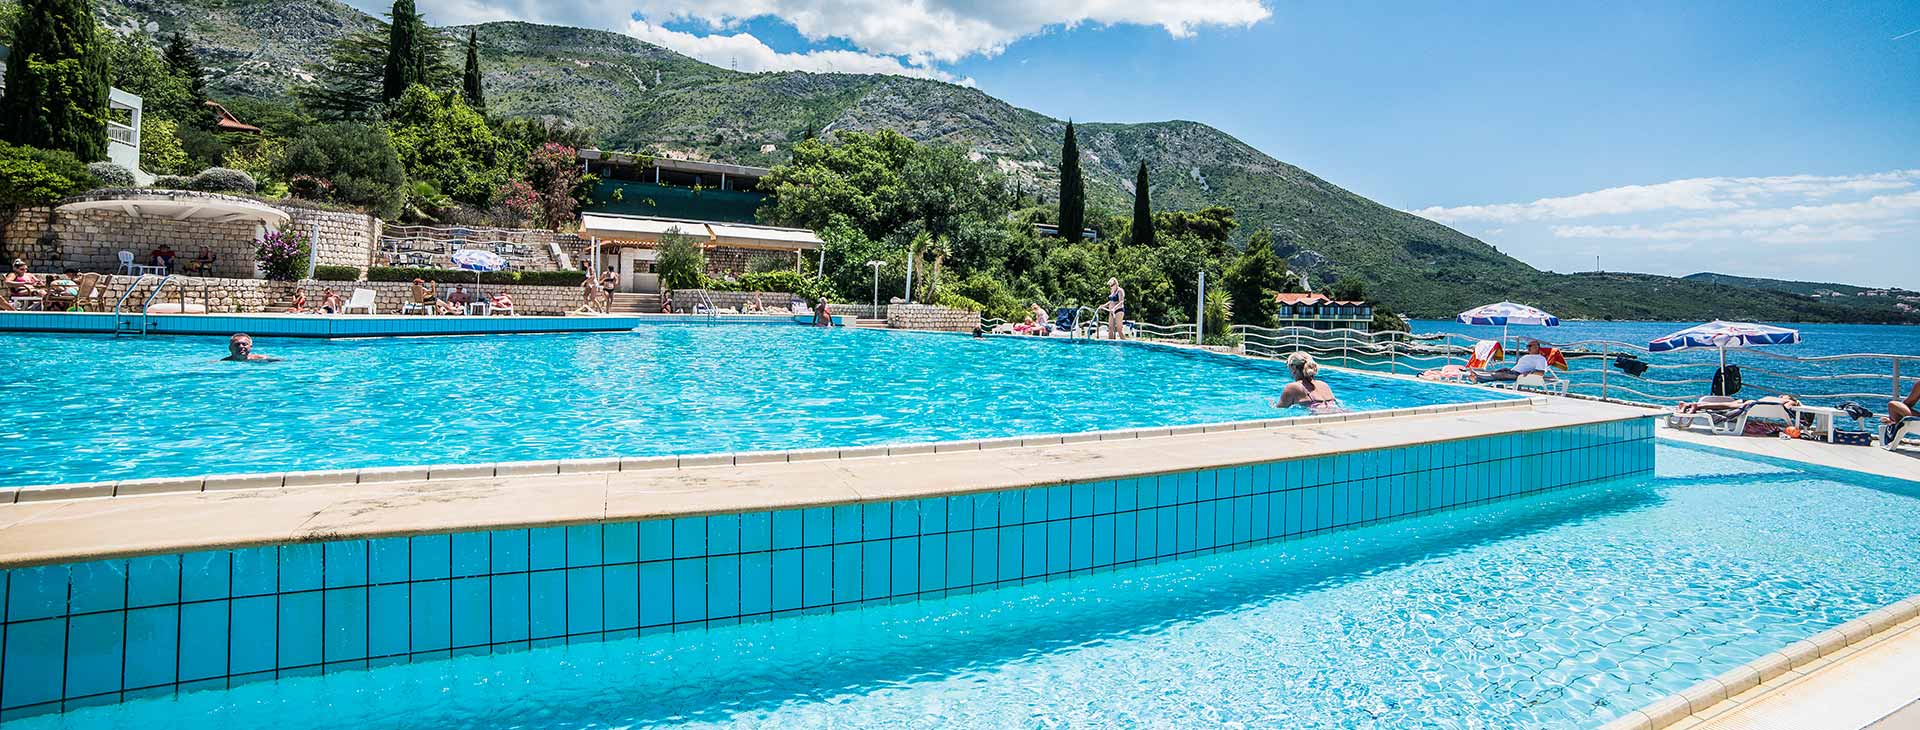 Hotel Villas Plat - Dalmacja Południowa, Chorwacja